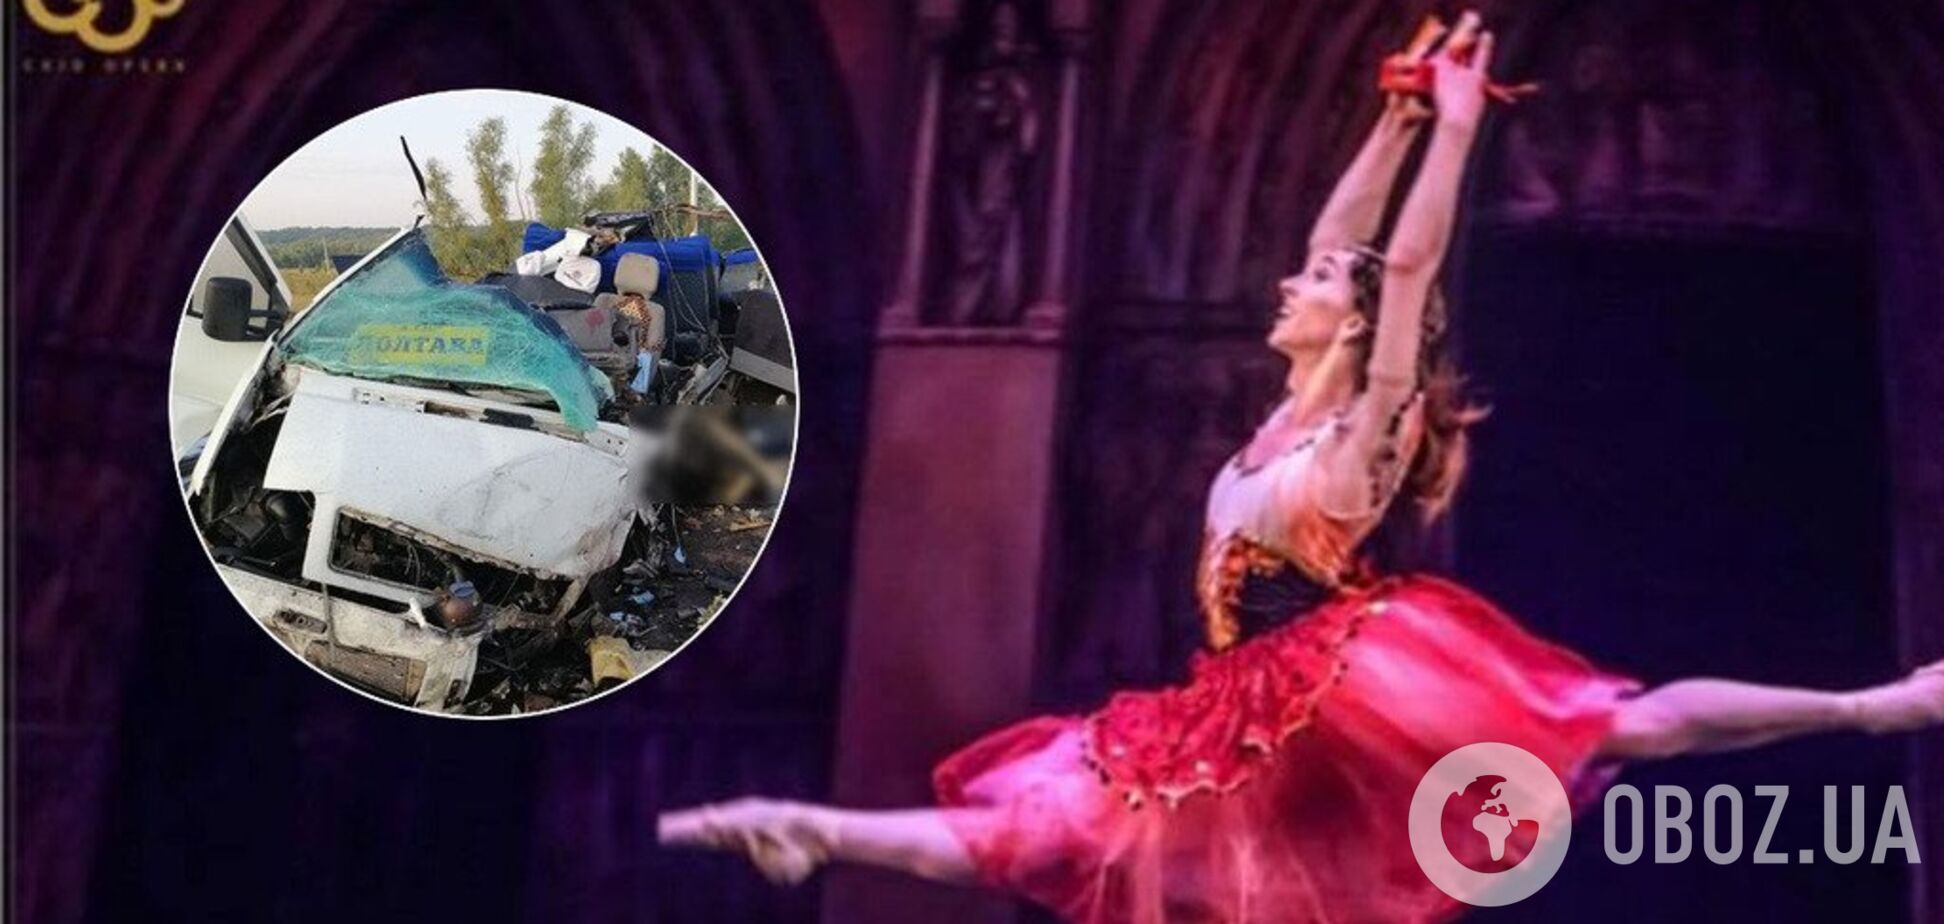 'Діра в душі': подробиці страшної загибелі відомої балерини під Полтавою